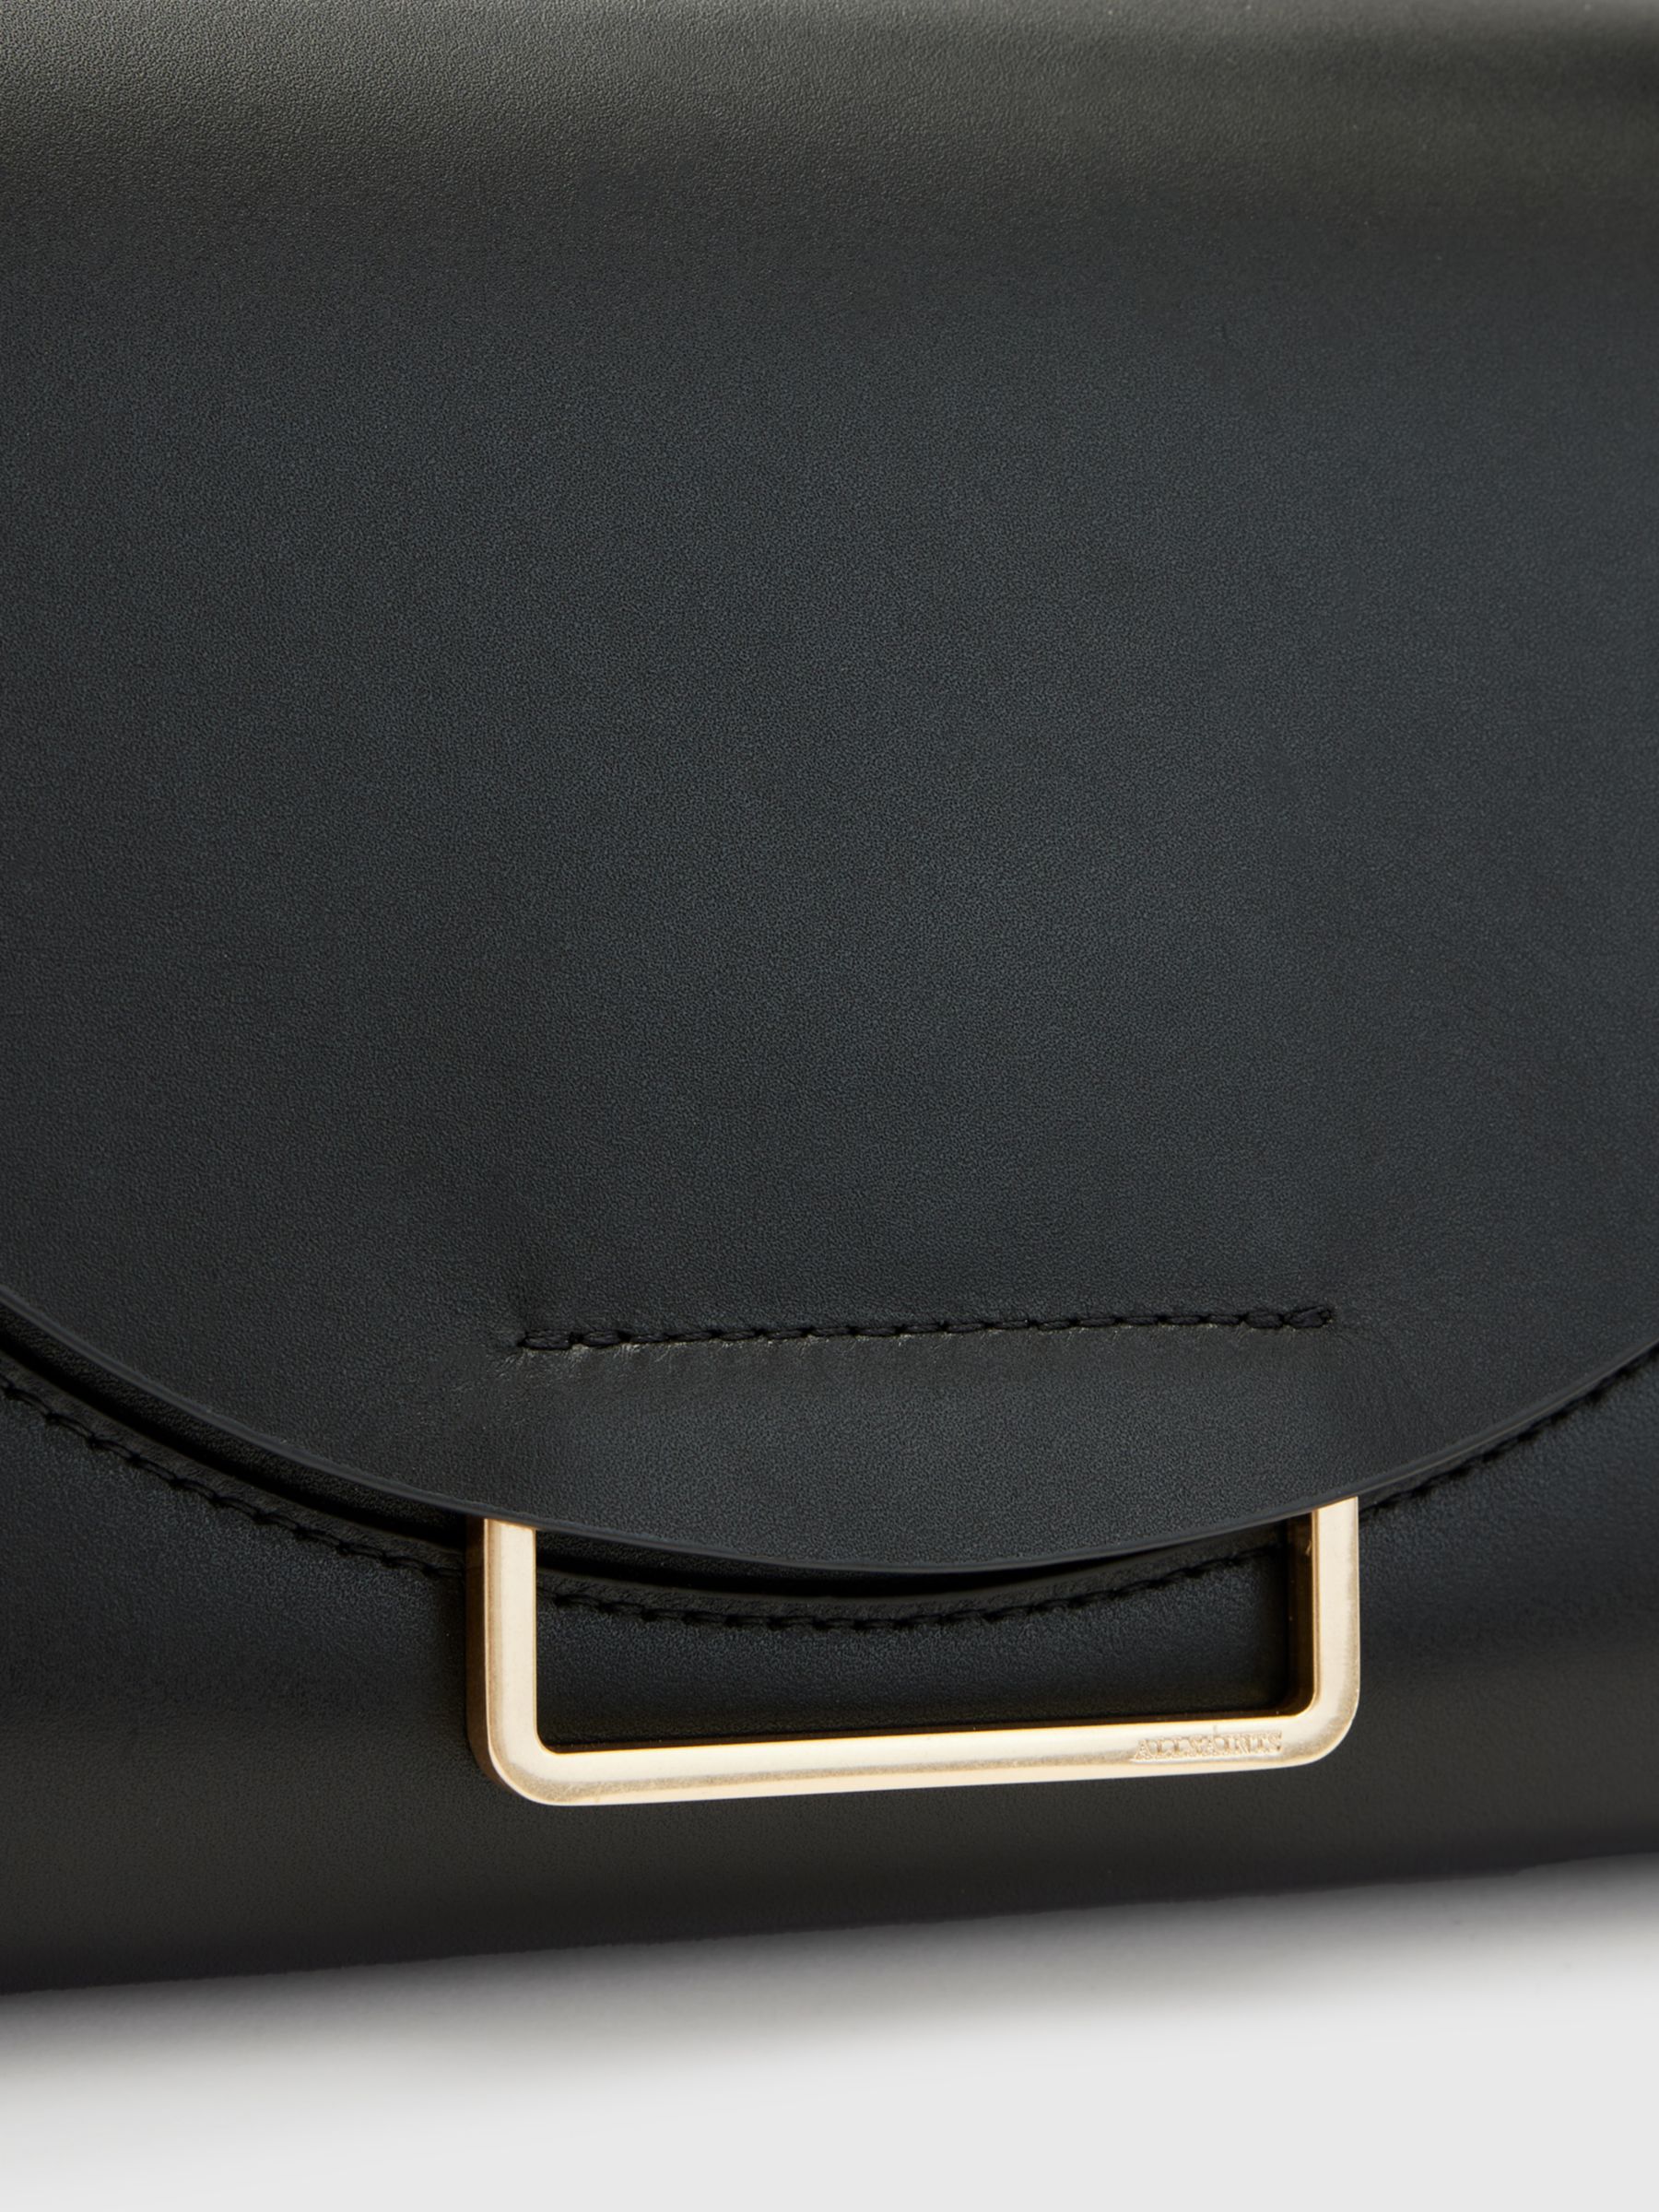 AllSaints Celeste Leather Shoulder Bag, Black at John Lewis & Partners